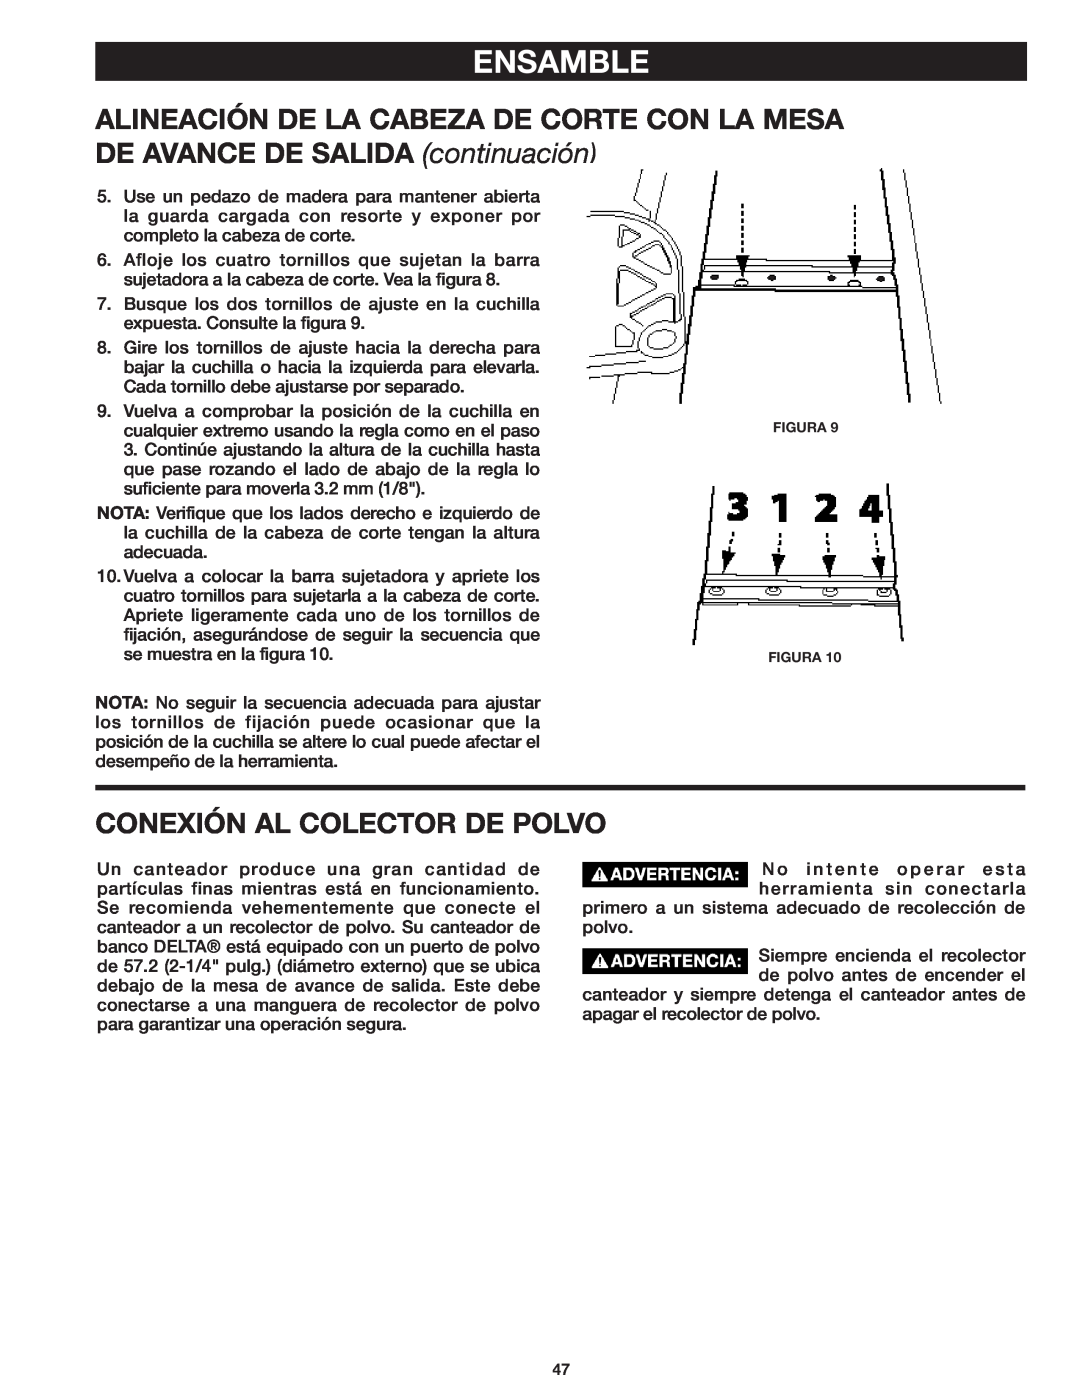 Delta 37-071 instruction manual Conexión Al Colector De Polvo, Ensamble 